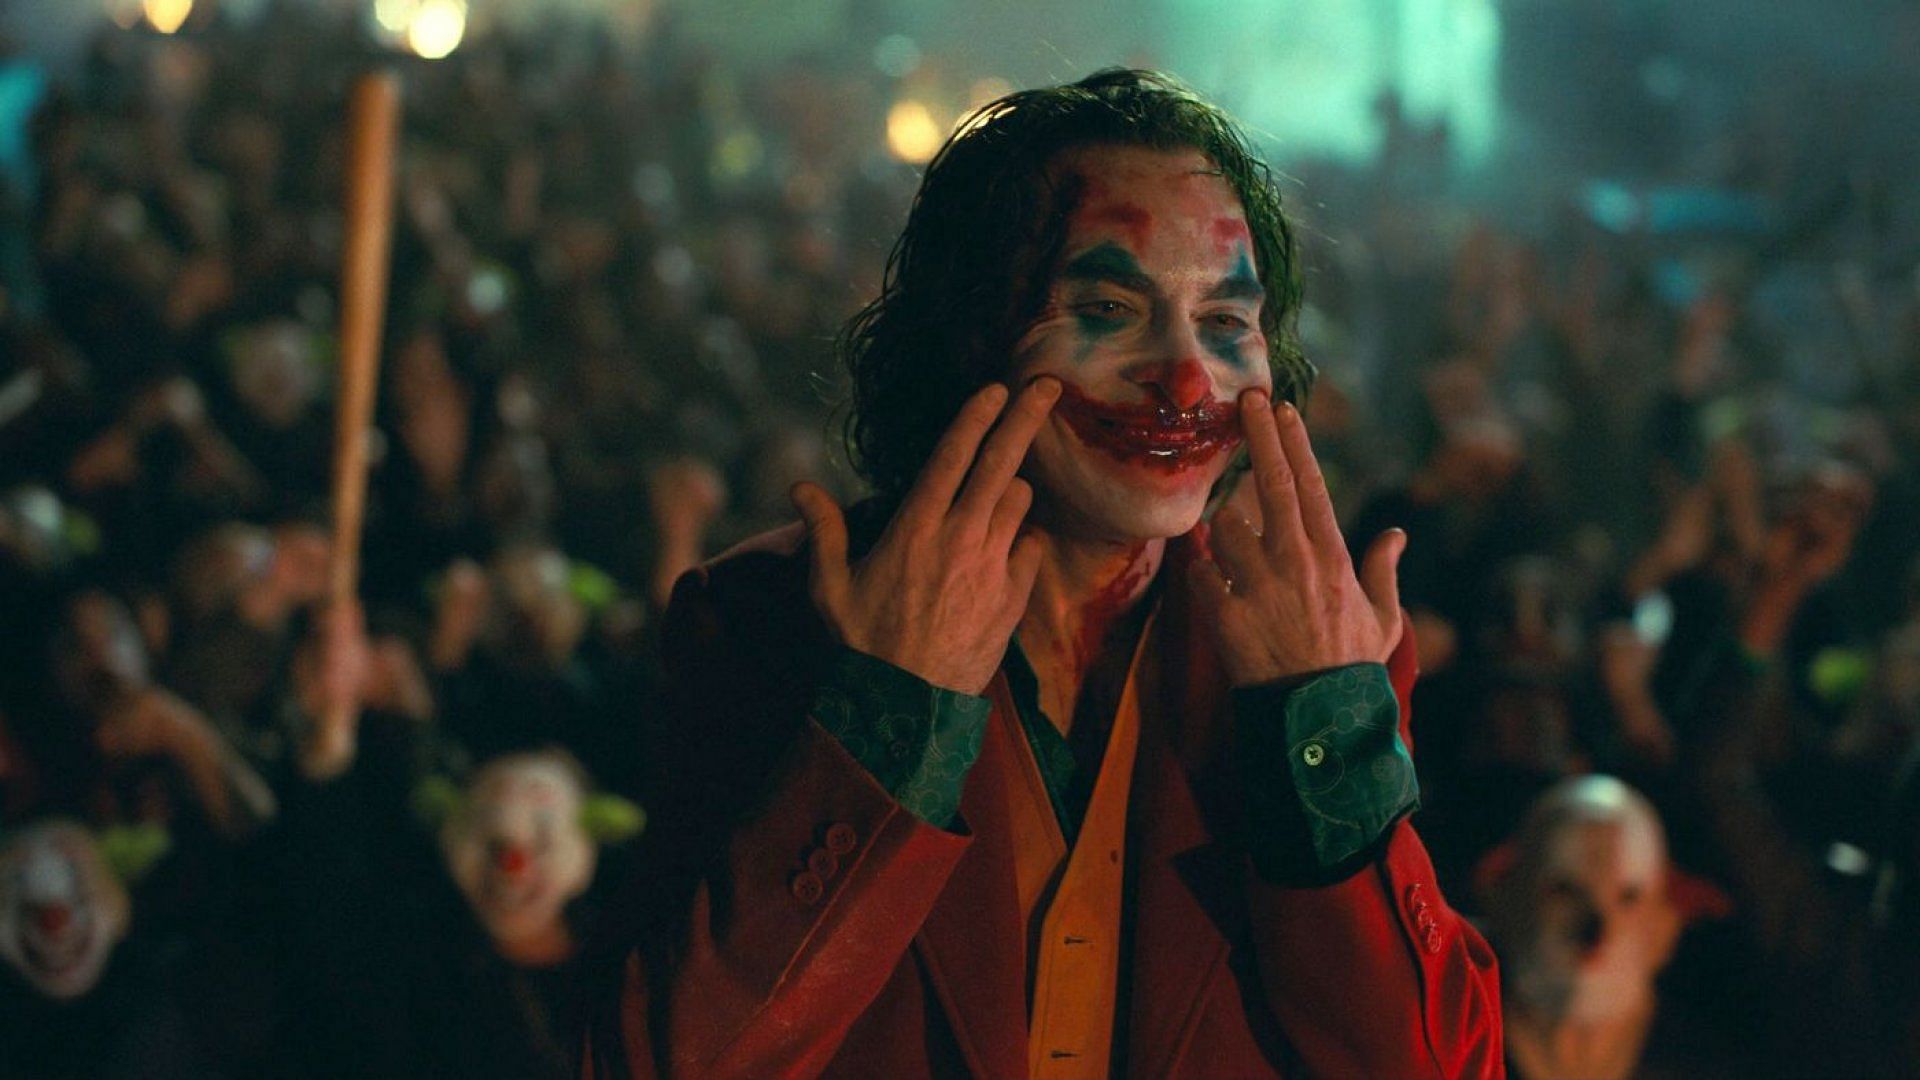 Joaquin Phoenix as Joker (Image via Warner Bros)